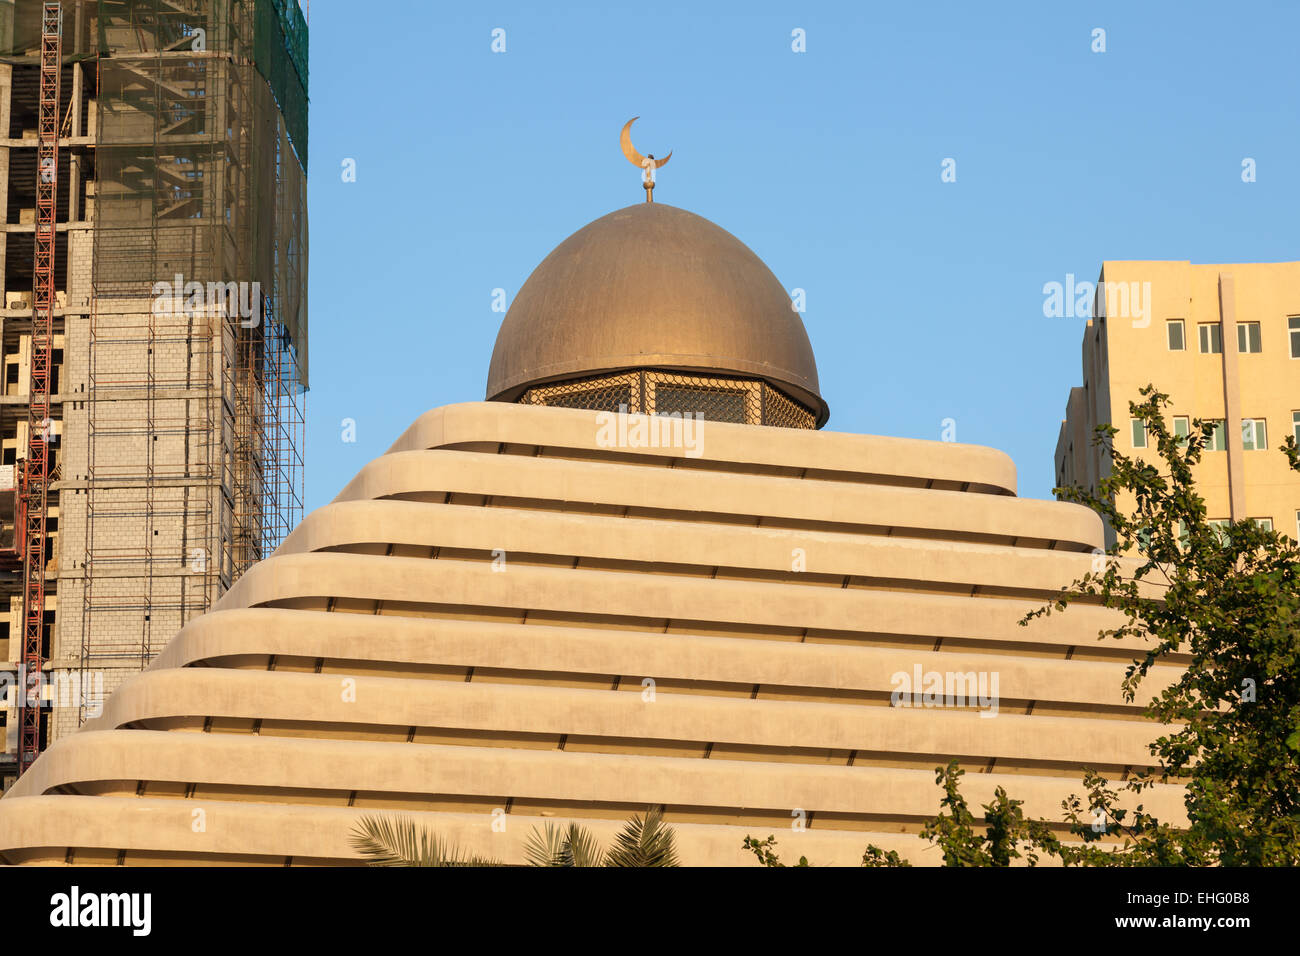 Pyramide mosquée dans la ville de Koweït, Moyen-Orient Banque D'Images